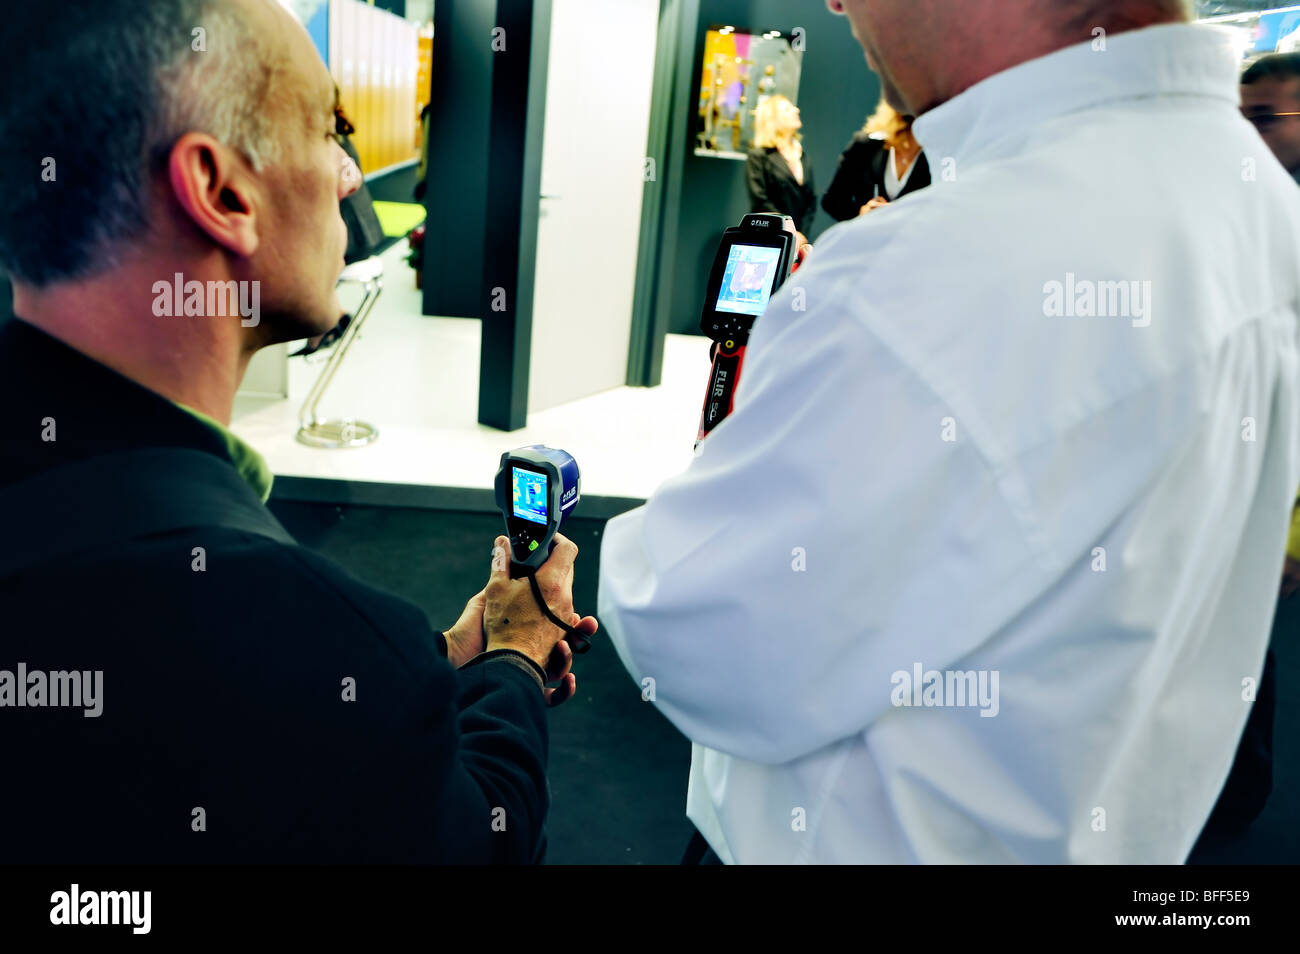 Paris, Frankreich, Messe für Baumaschinen, Thermografie, Flir Systems Company Display, zwei Männer im Gespräch Stockfoto